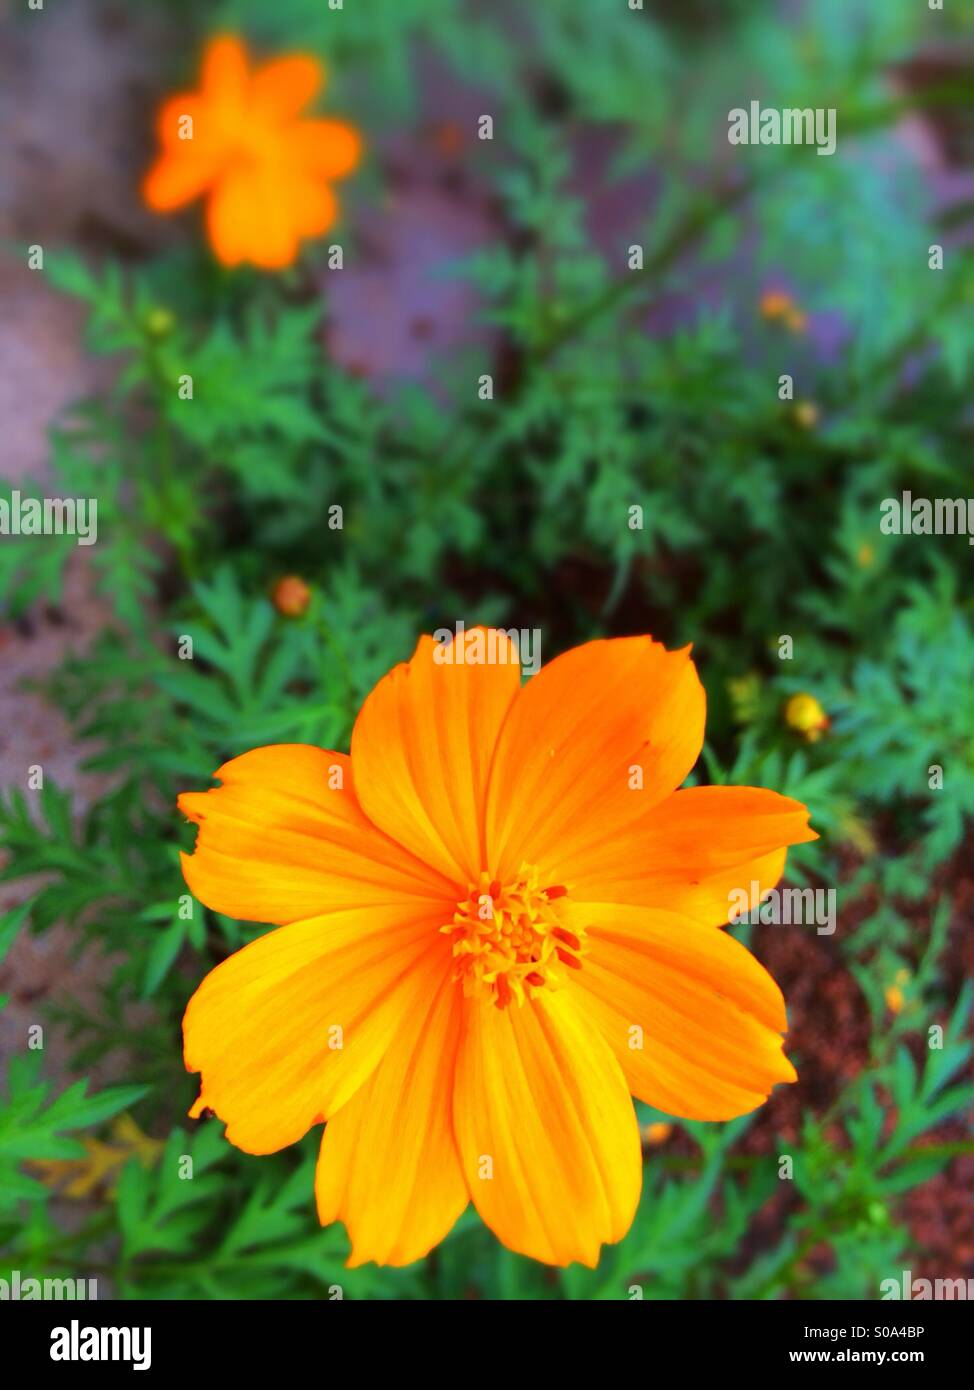 Orange cosmos flowers Stock Photo